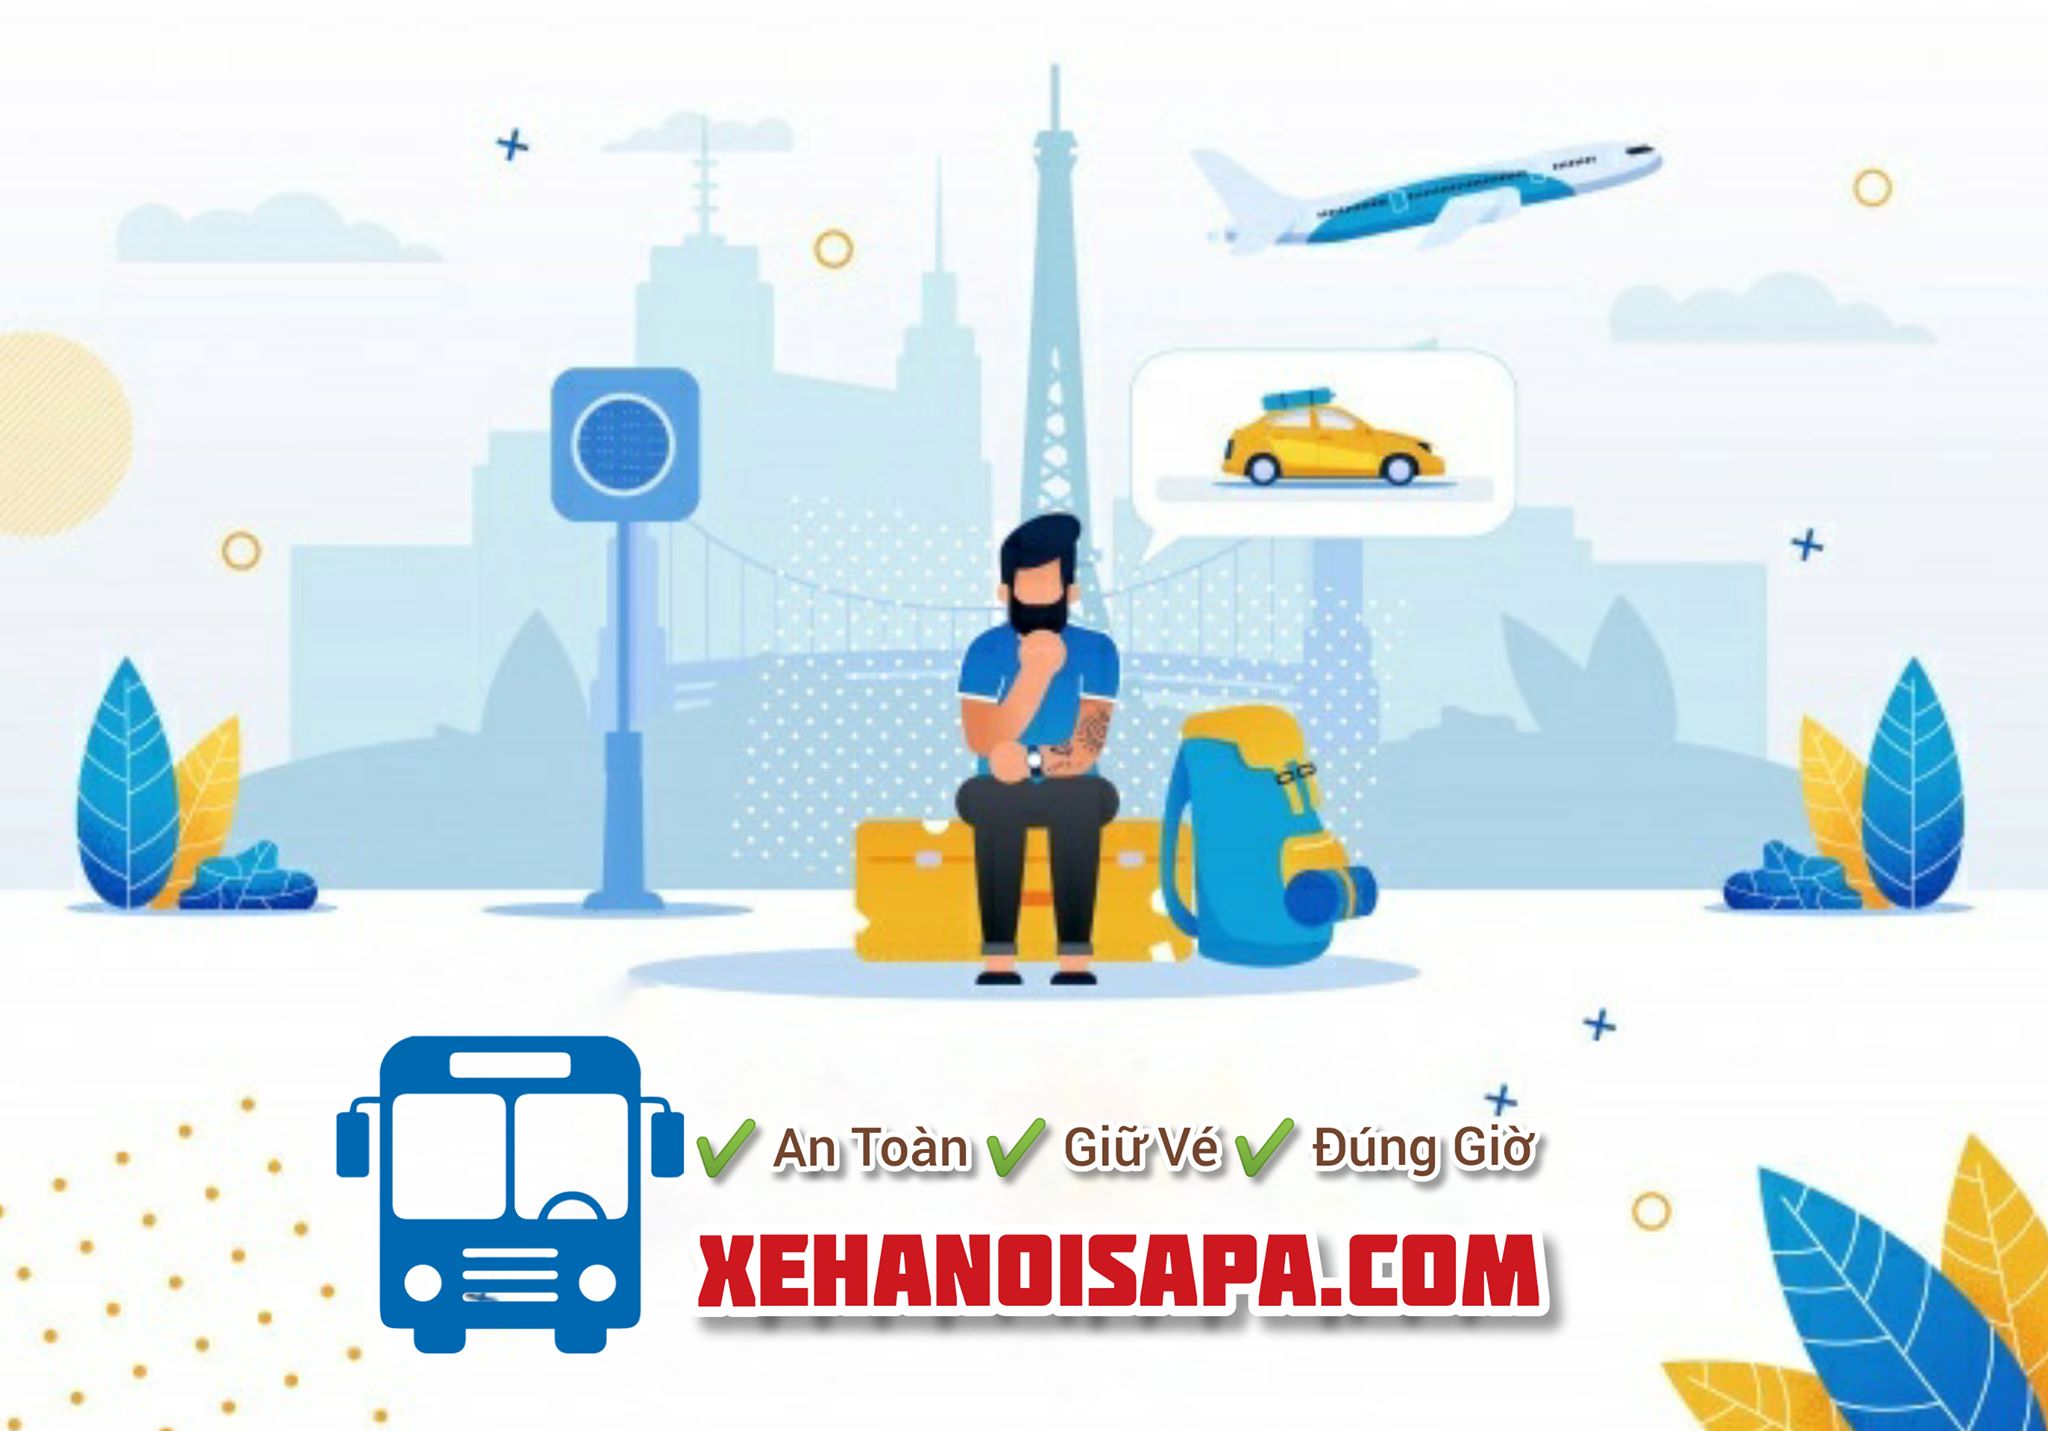 Hãng xe Sapa King Express - Booking uy tín, nhanh chóng tại Xehanoisapa.com